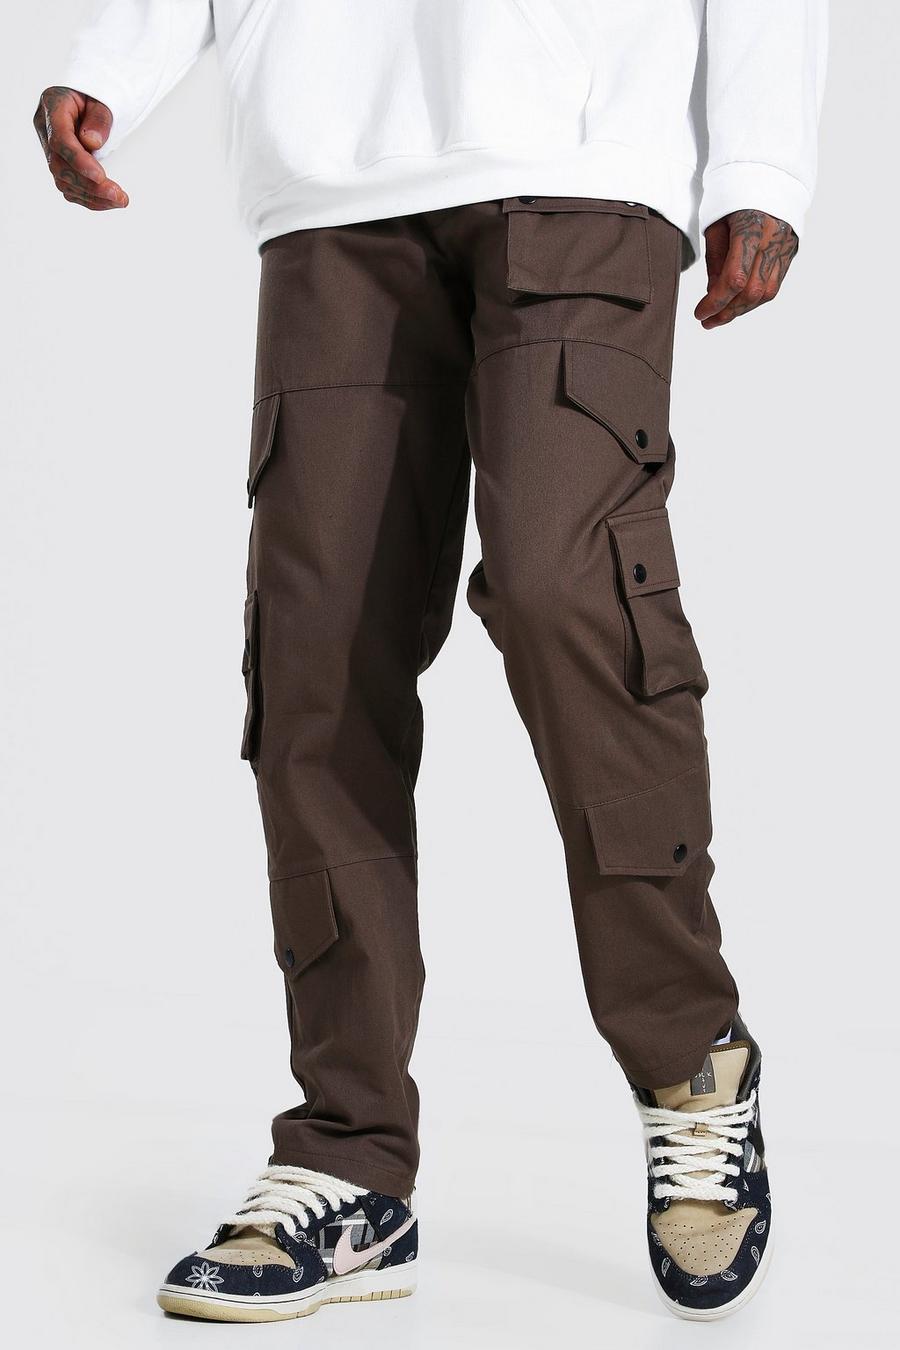 שוקולד marrón מכנסי דגמ'ח בגזרה משוחררת עם רצועת מותניים מהודקת